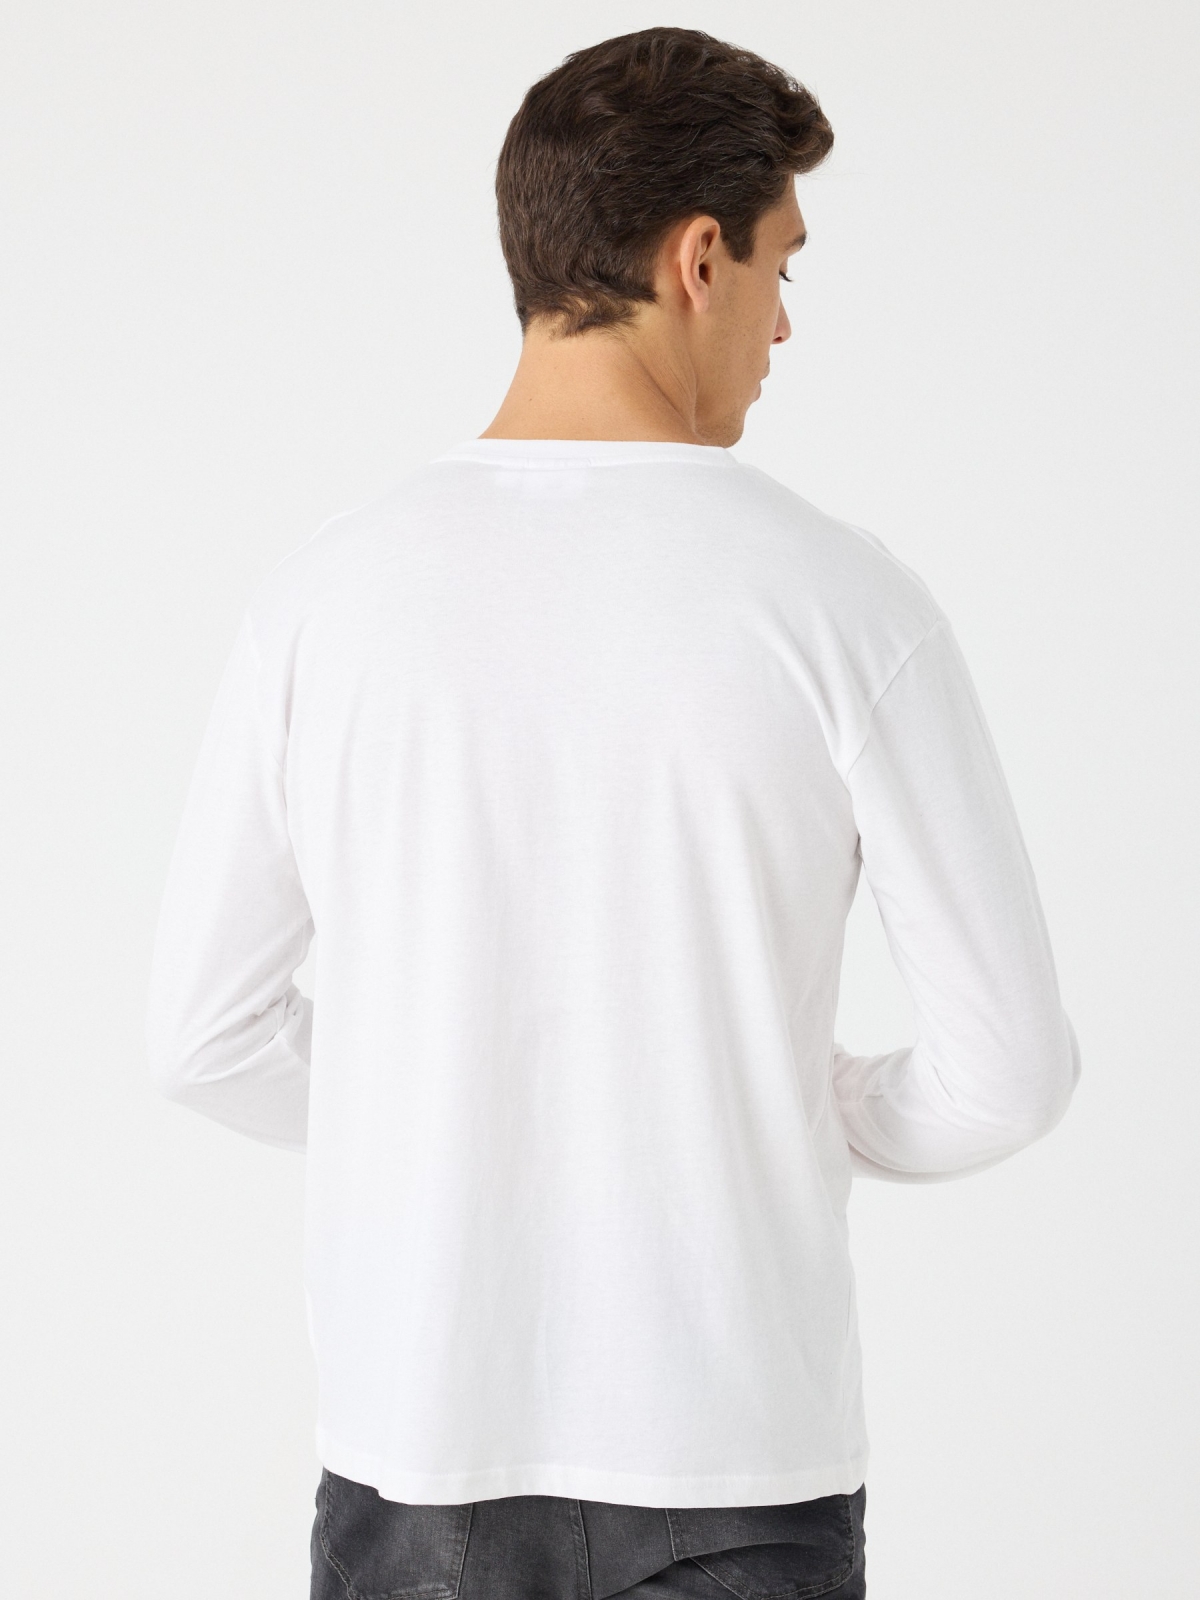 Camiseta manga larga Dragon Ball blanco vista media trasera